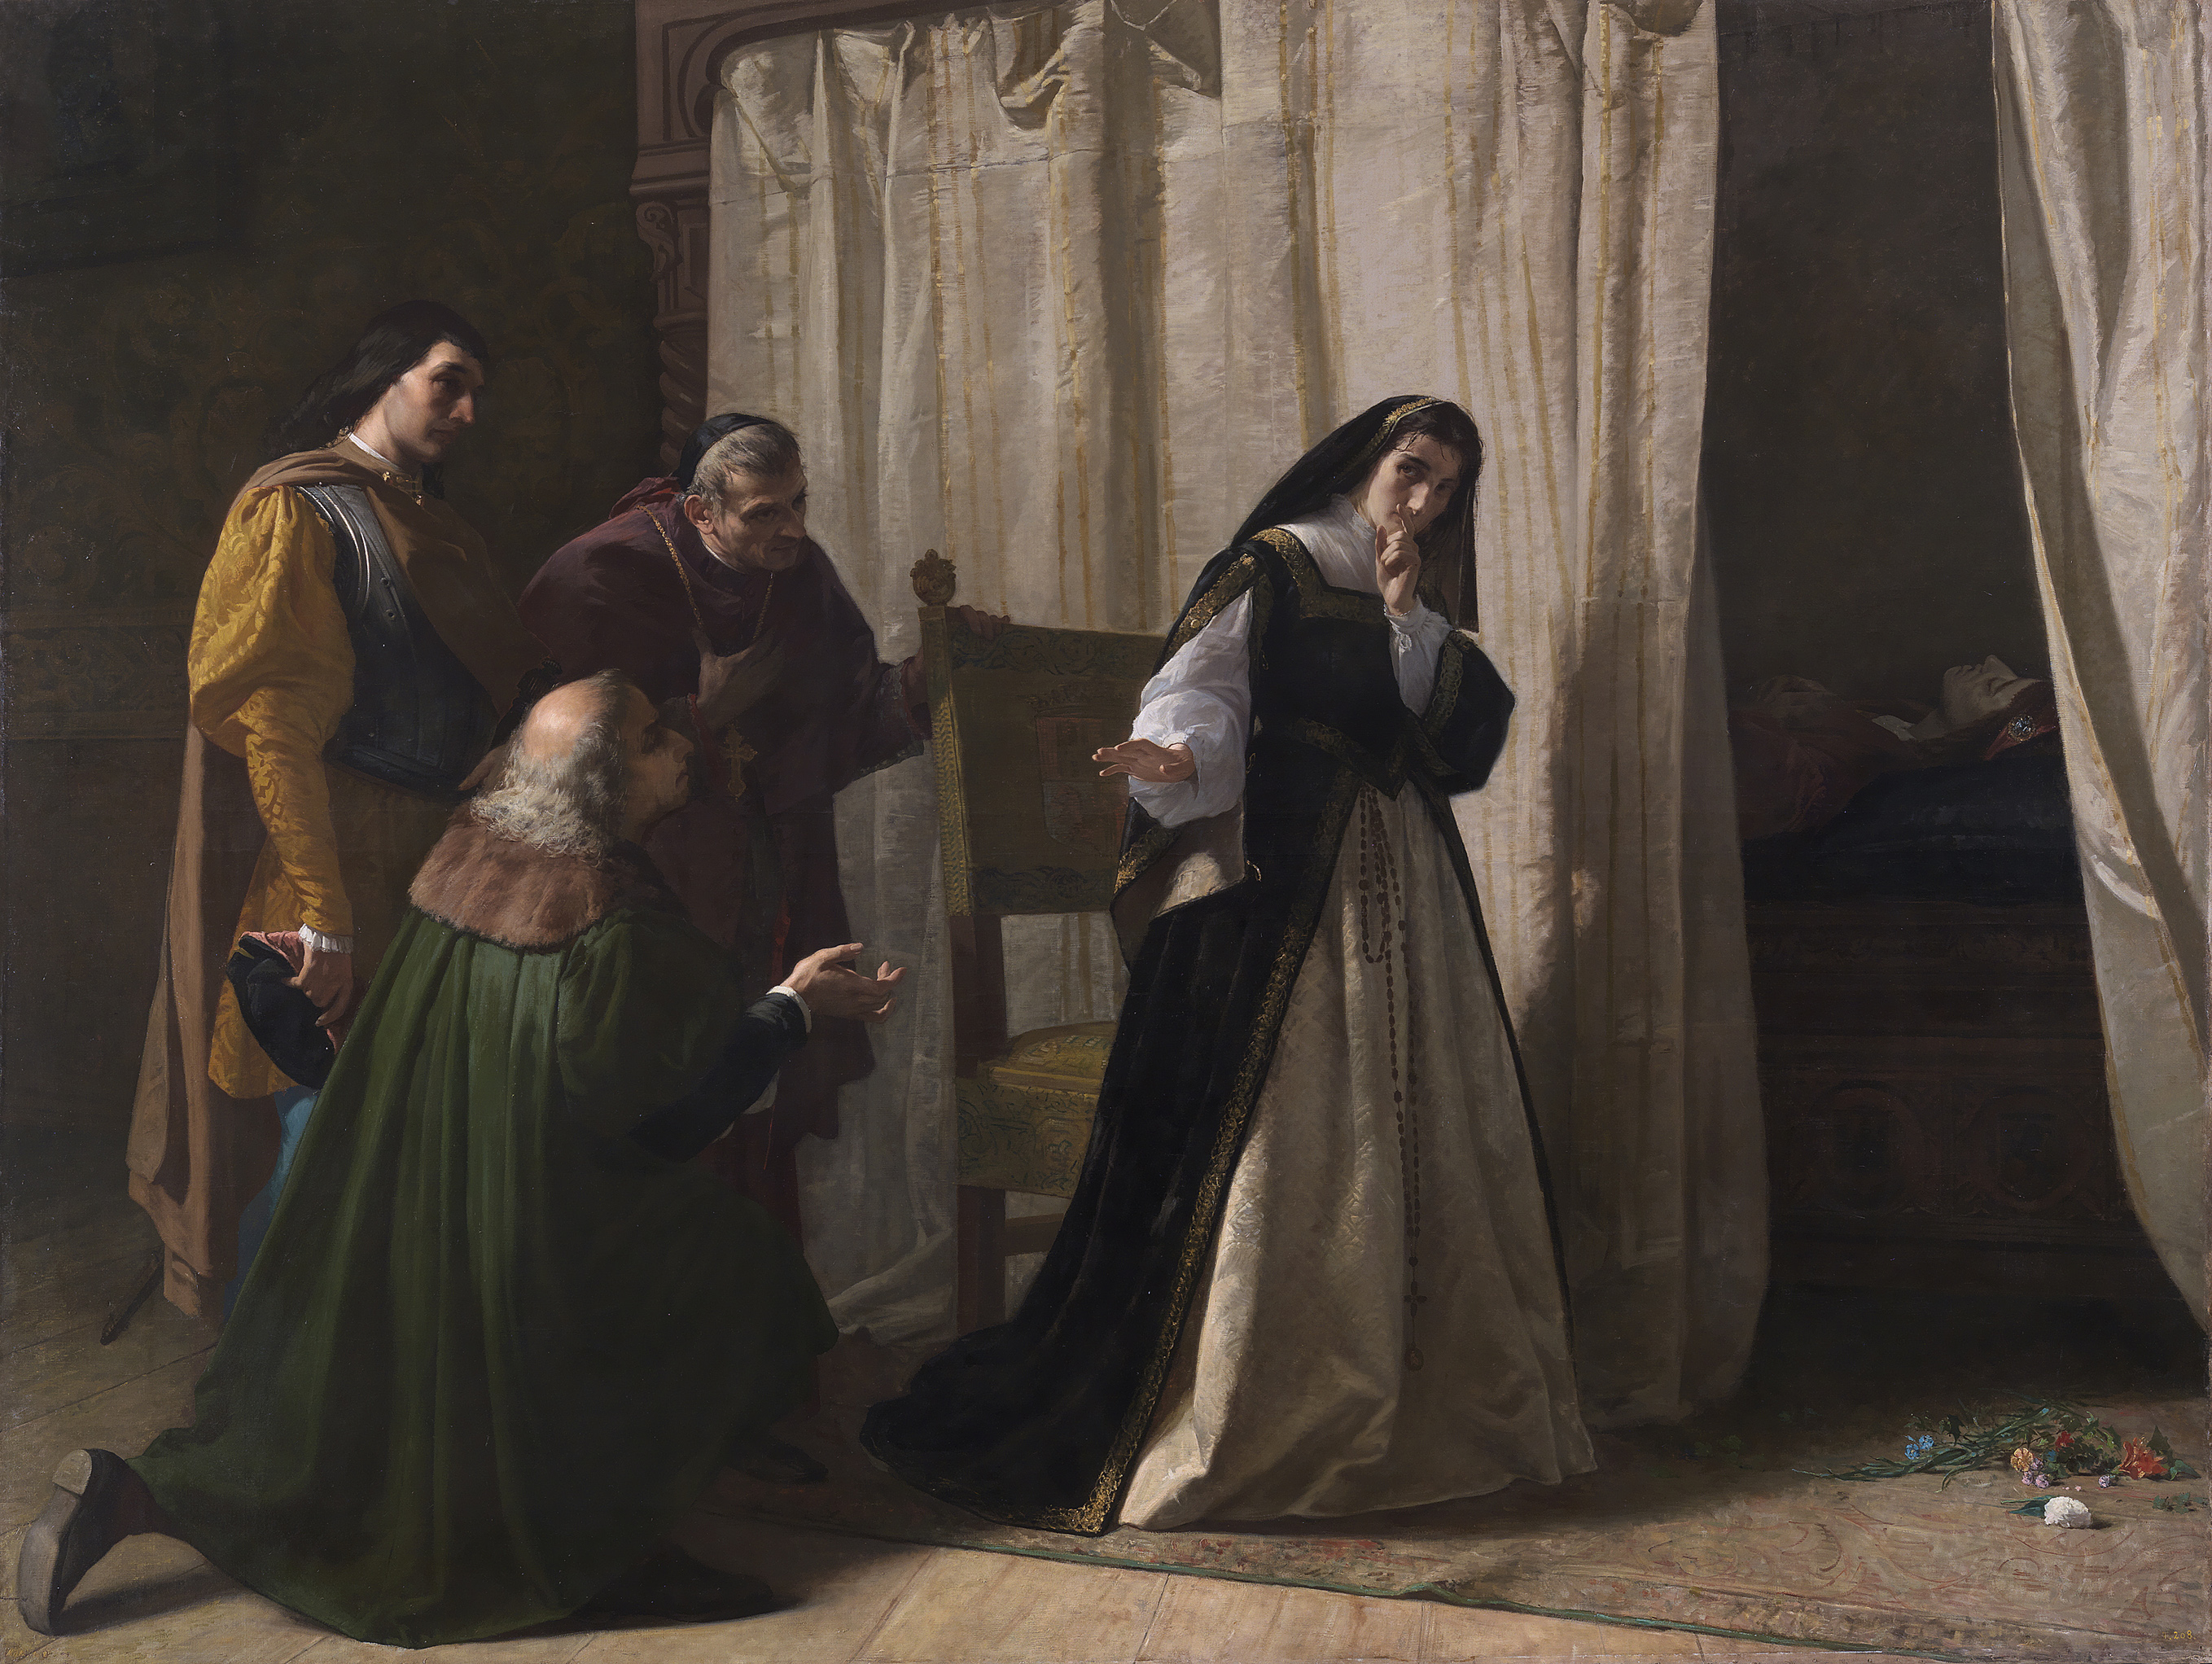 ICAL . Lienzo ‘Demencia de doña Juana de Castilla’, de Lorenzo Vallés (1866), en el Museo del Prado